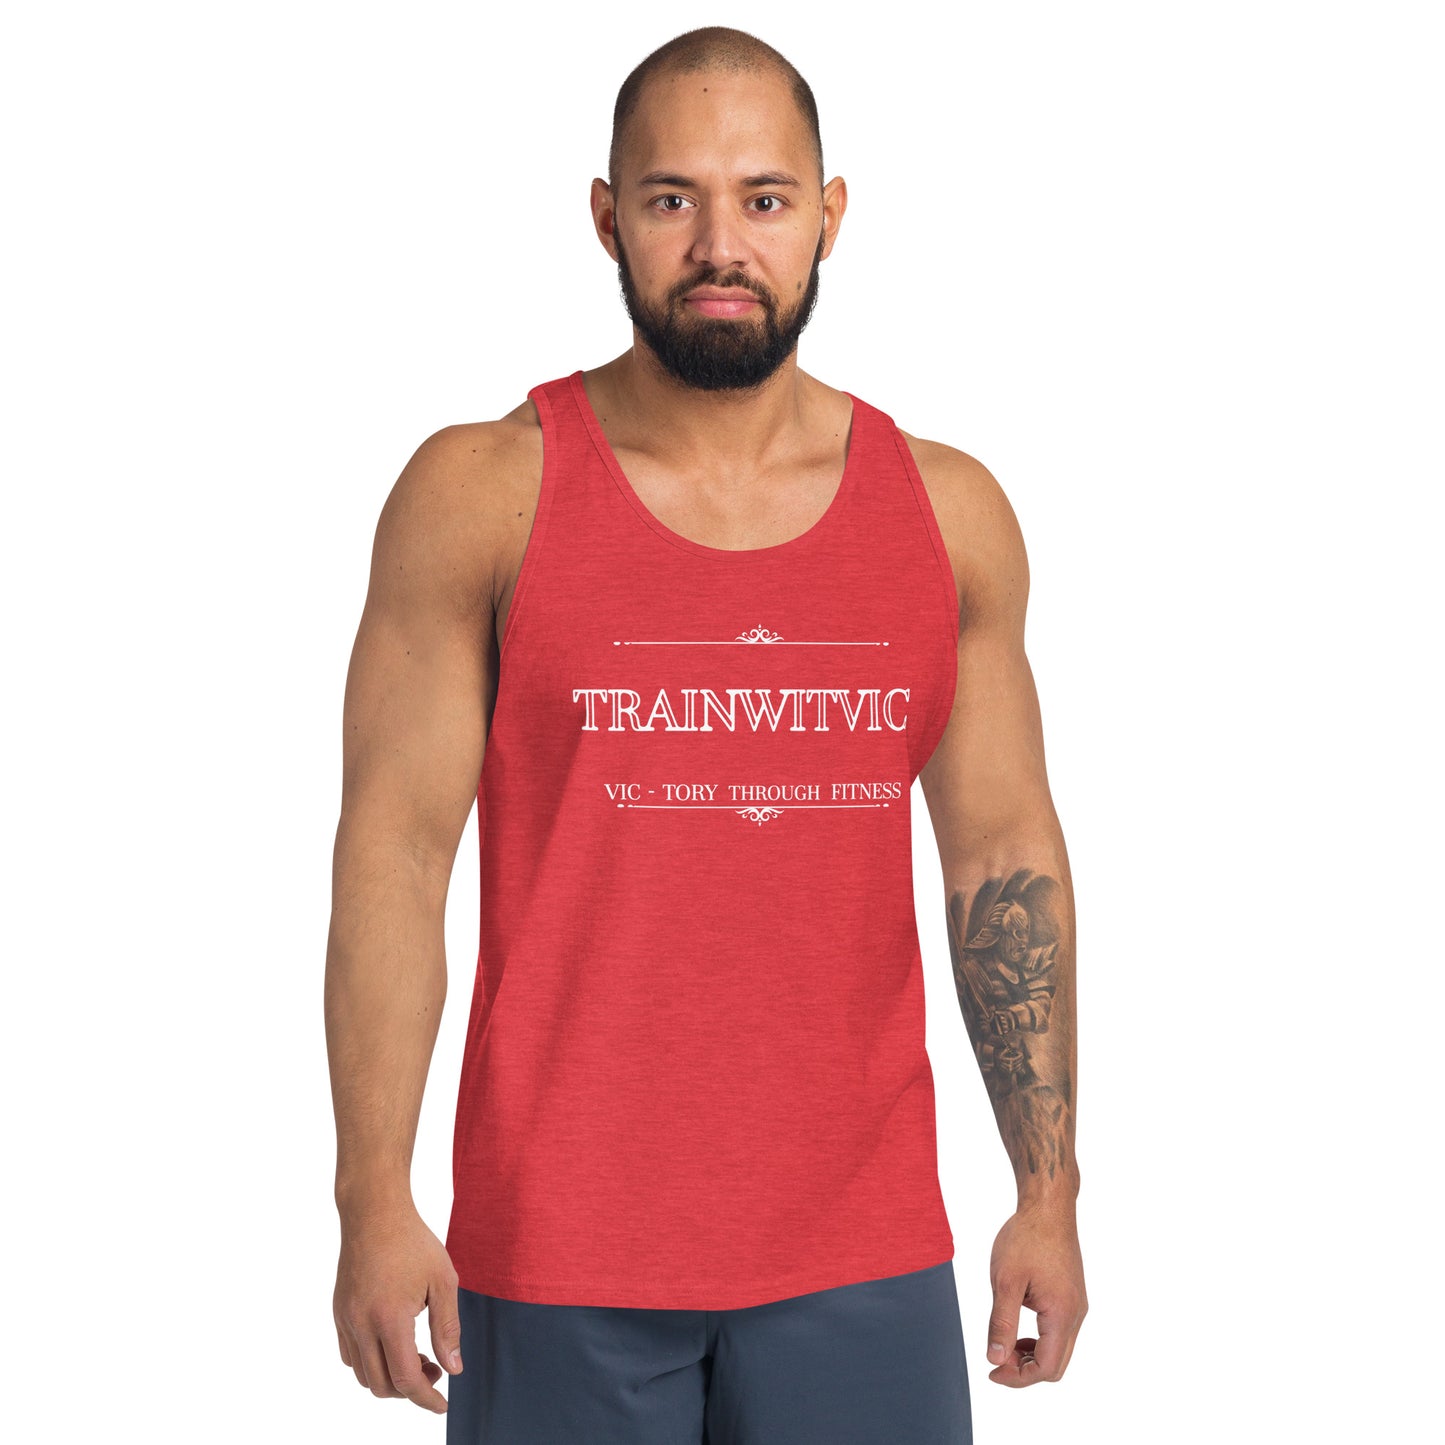 Trainwitvic Men's Tank Top